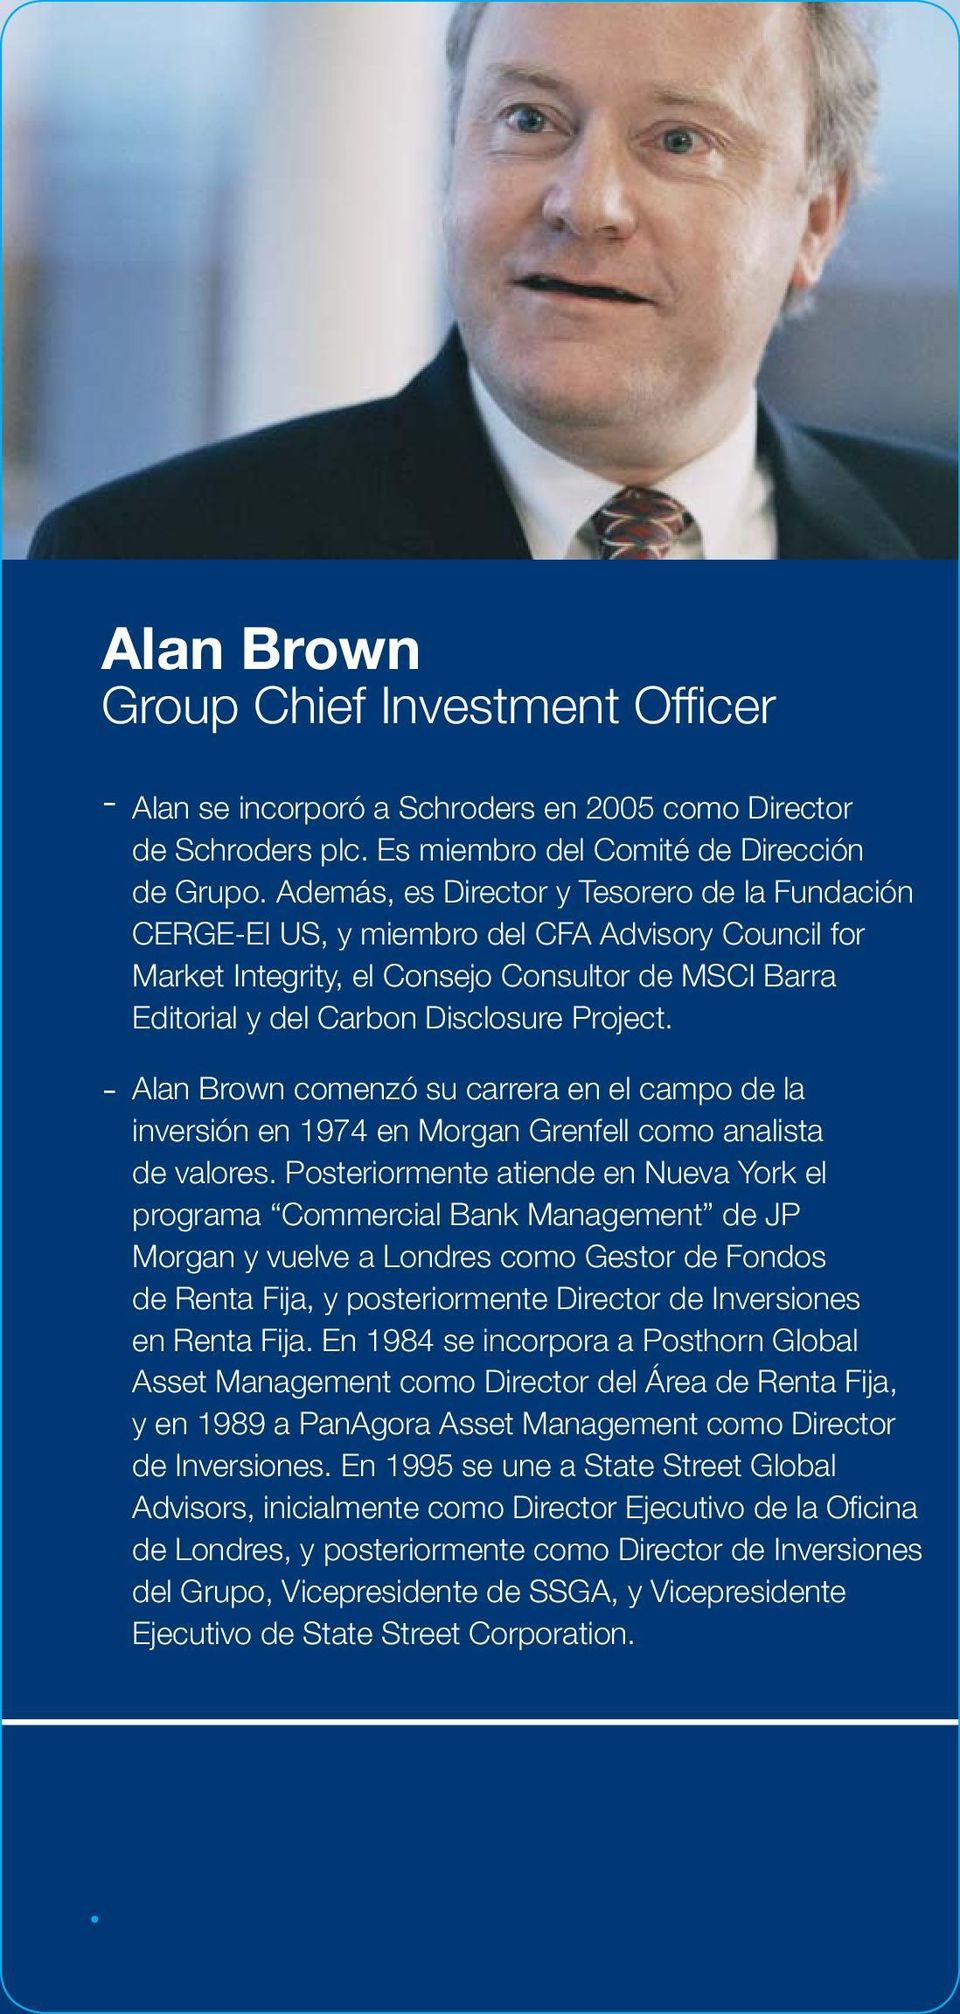 Alan Brown comenzó su carrera en el campo de la inversión en 1974 en Morgan Grenfell como analista de valores.